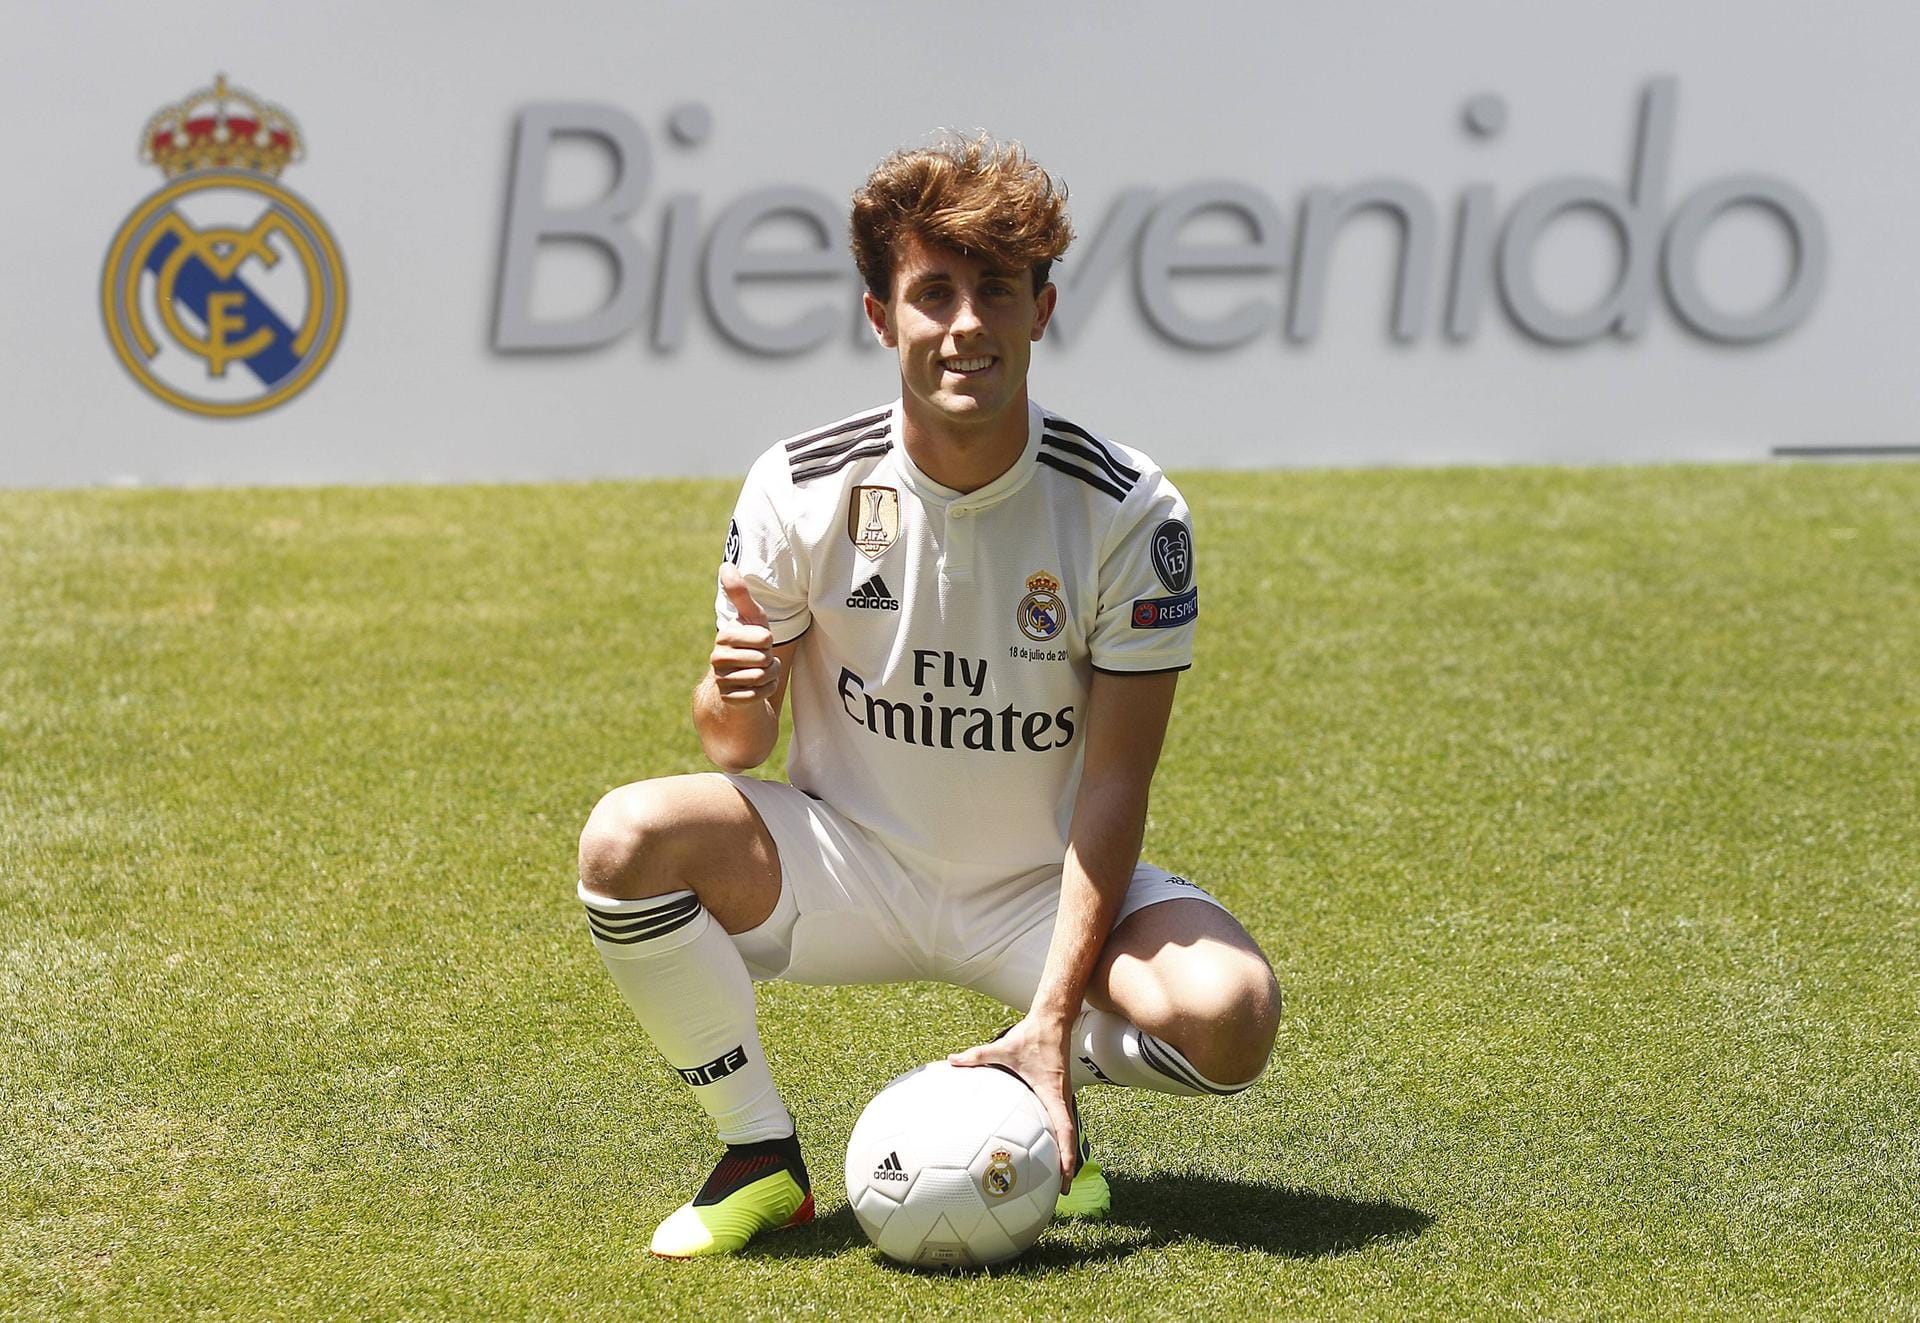 Juli 2018: Für die stattliche Ablösesumme von 30 Millionen Euro wechselt Alvaro Odriozola zu Real Madrid. Bei den "Königlichen" soll er den Konkurrenzkampf in der Abwehr erhöhen und aufgrund seiner spielerischen Qualität das Spiel mit dem Ball des Teams verbessern.